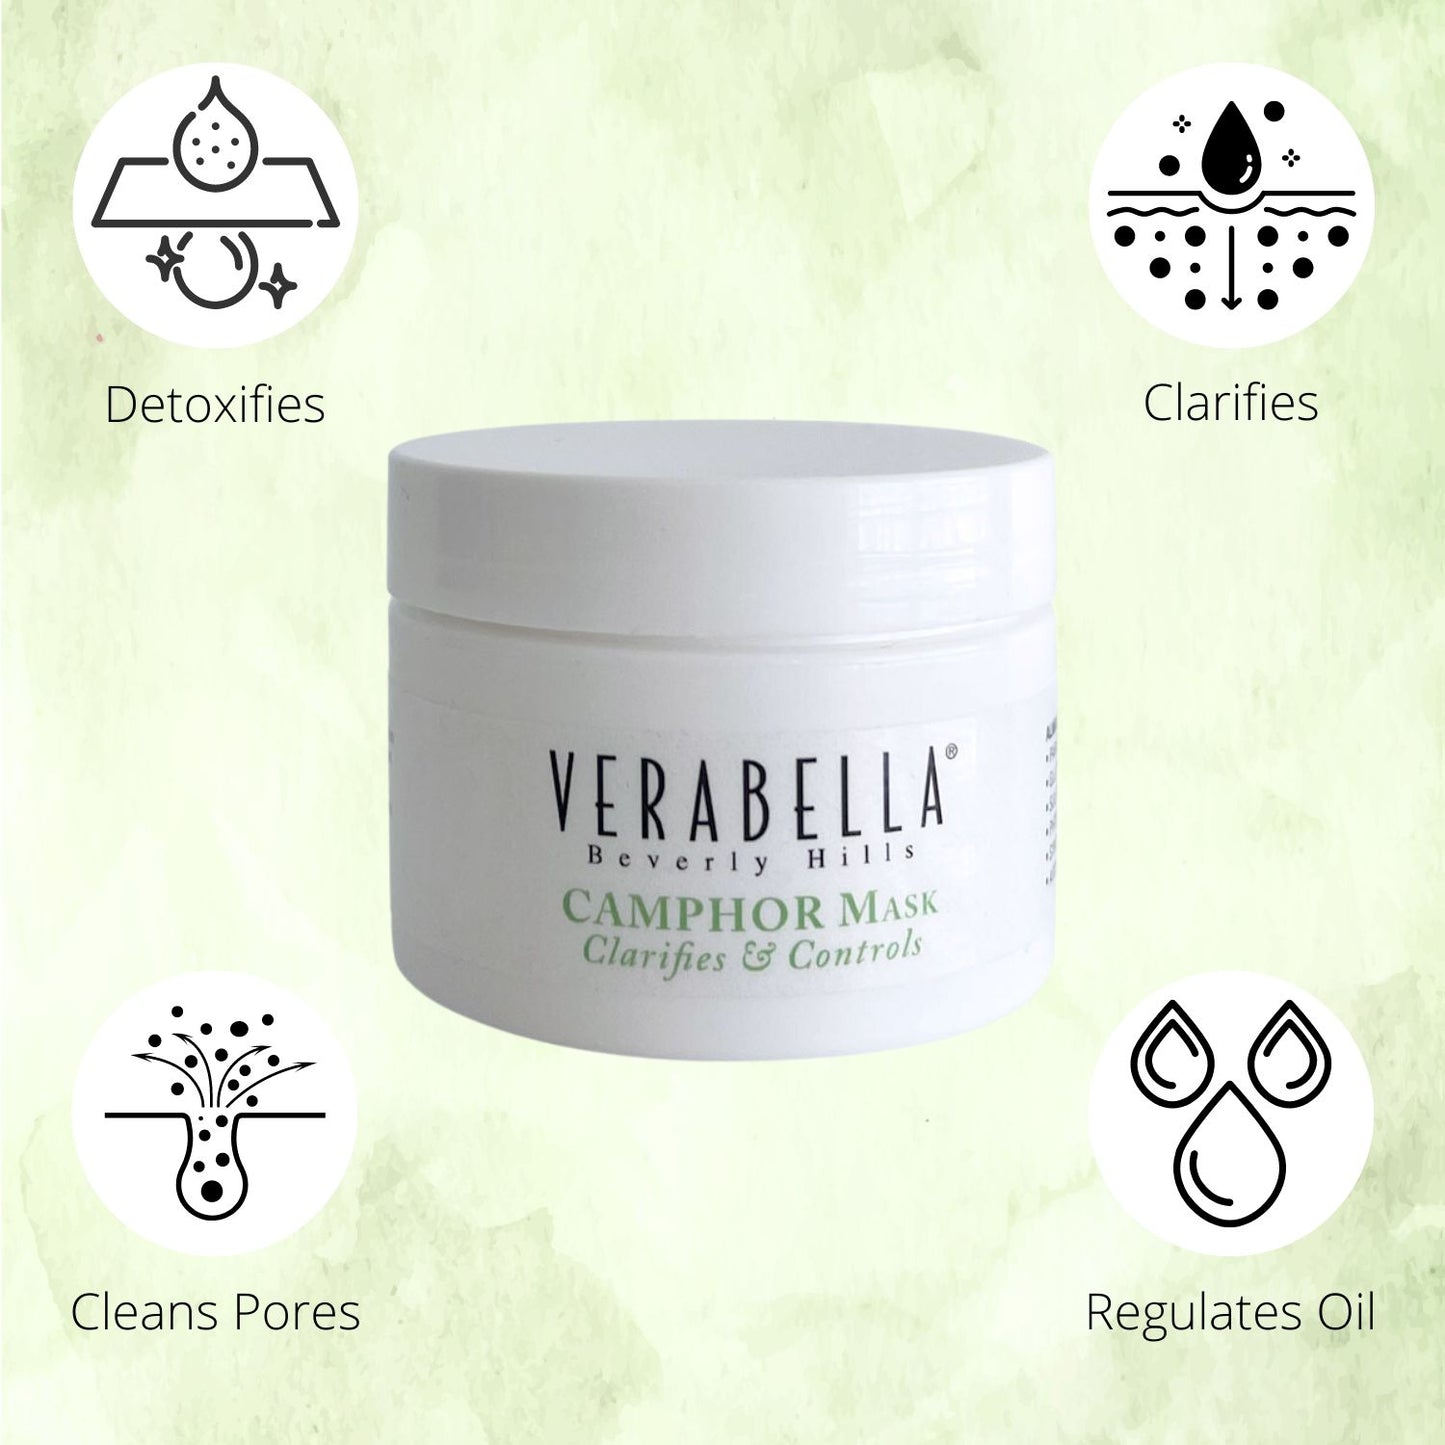 Verabella Camphor Mask clarifies and controls sebum